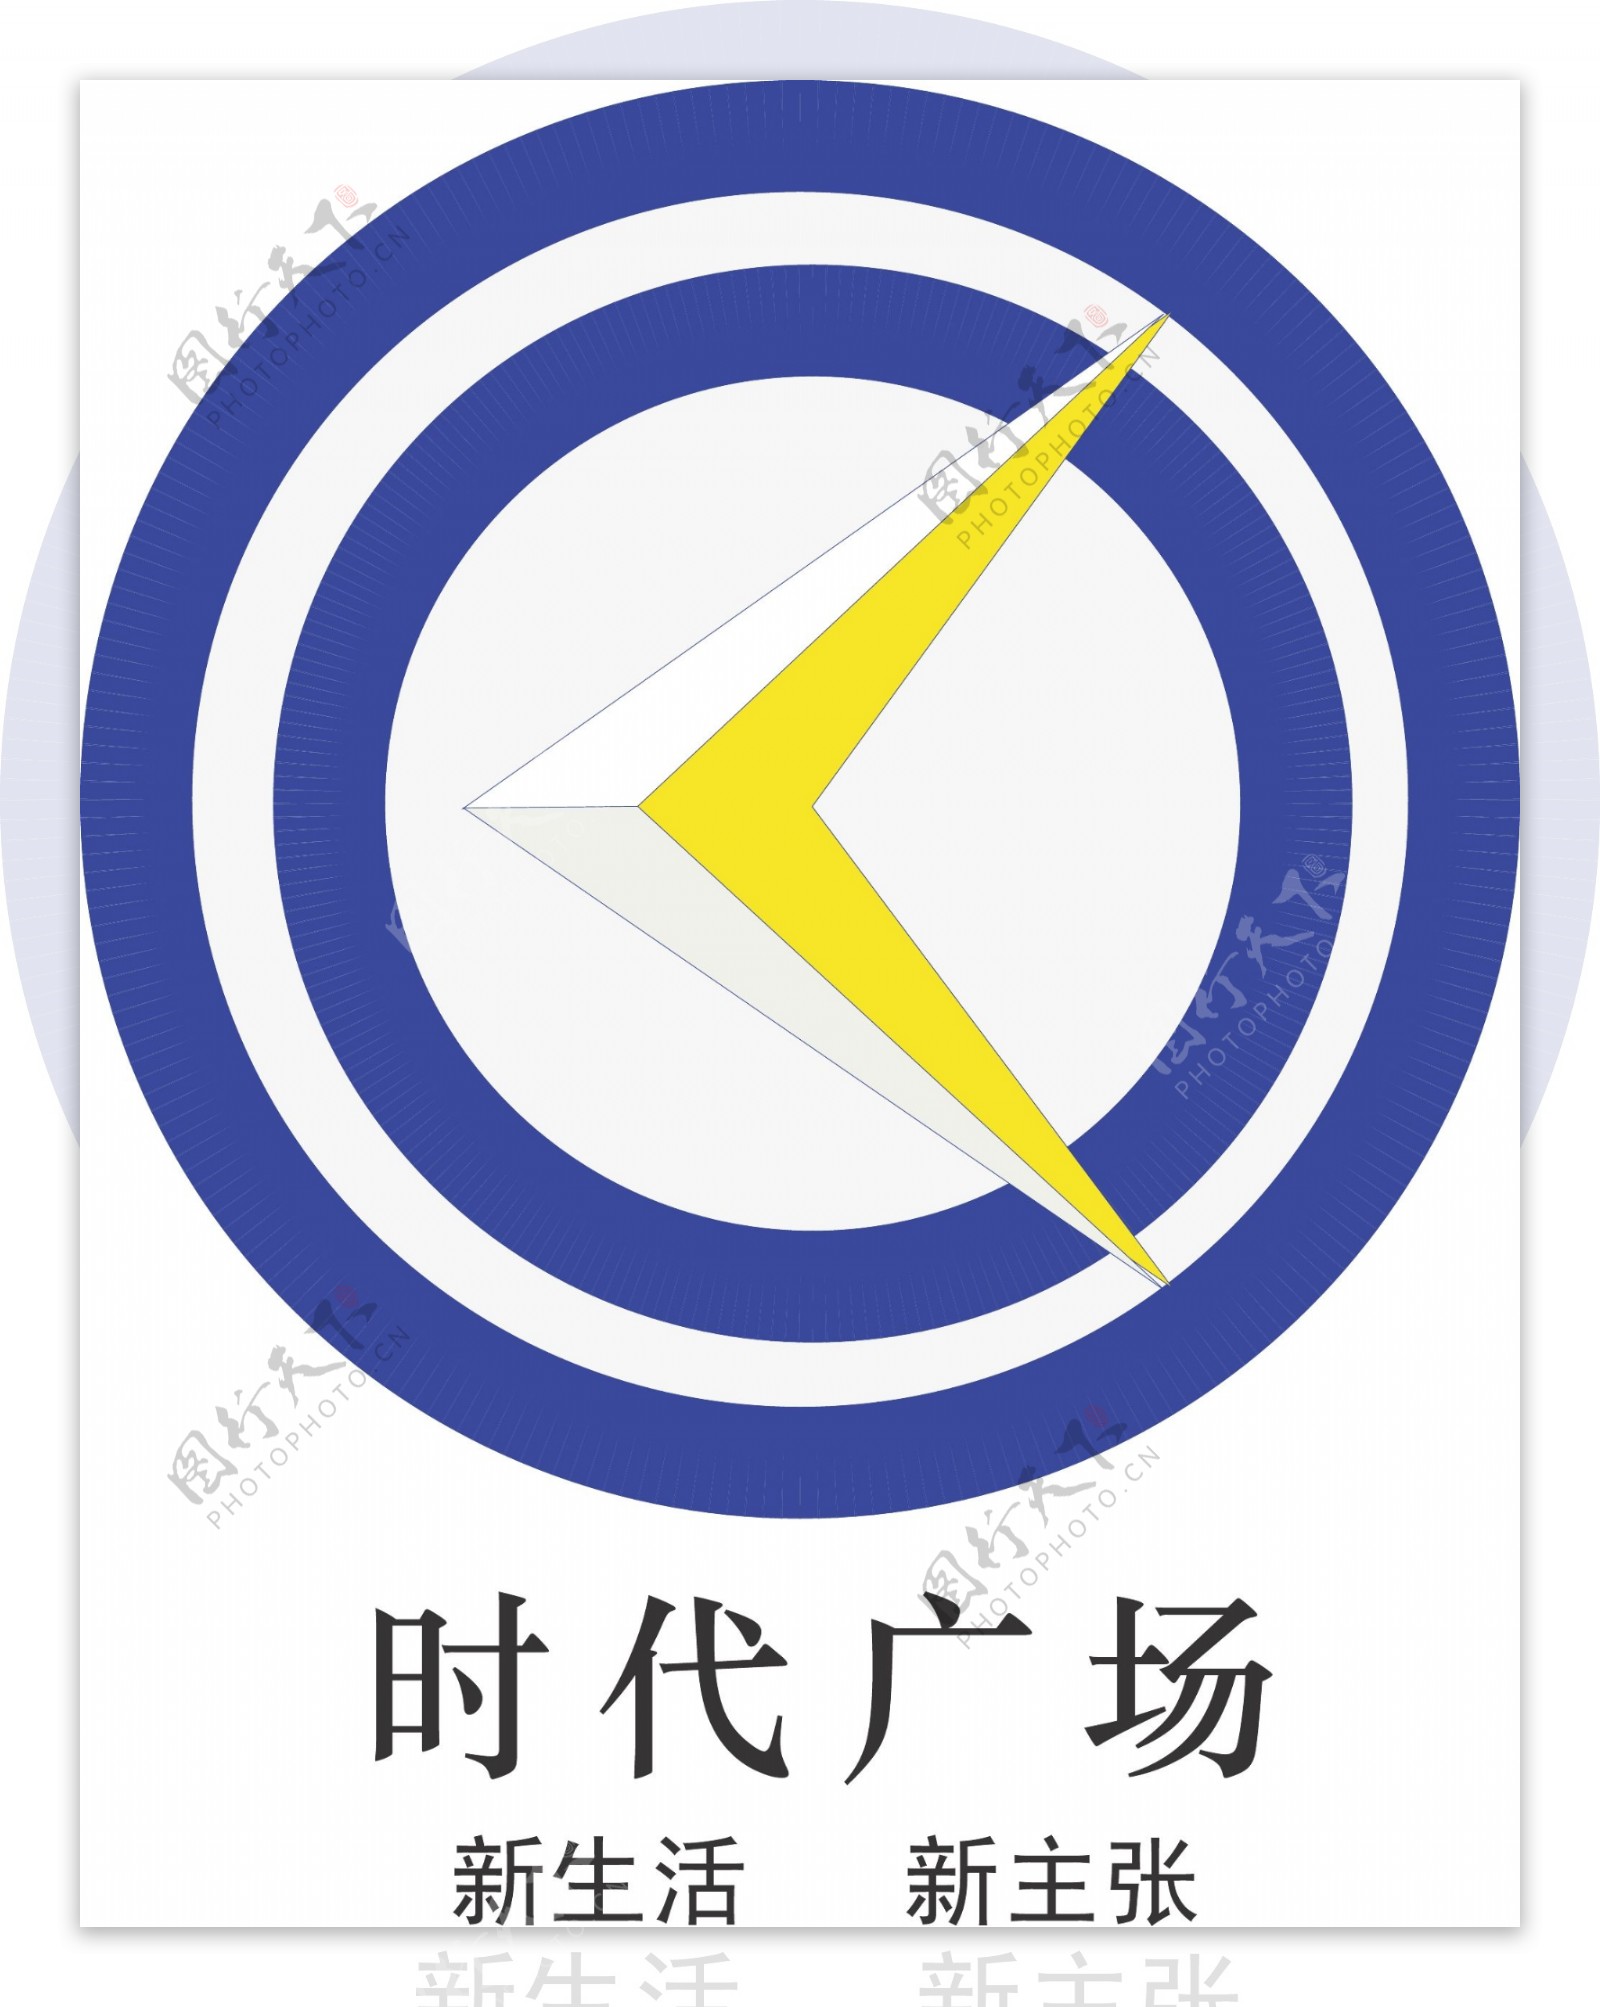 时代广场logo图片